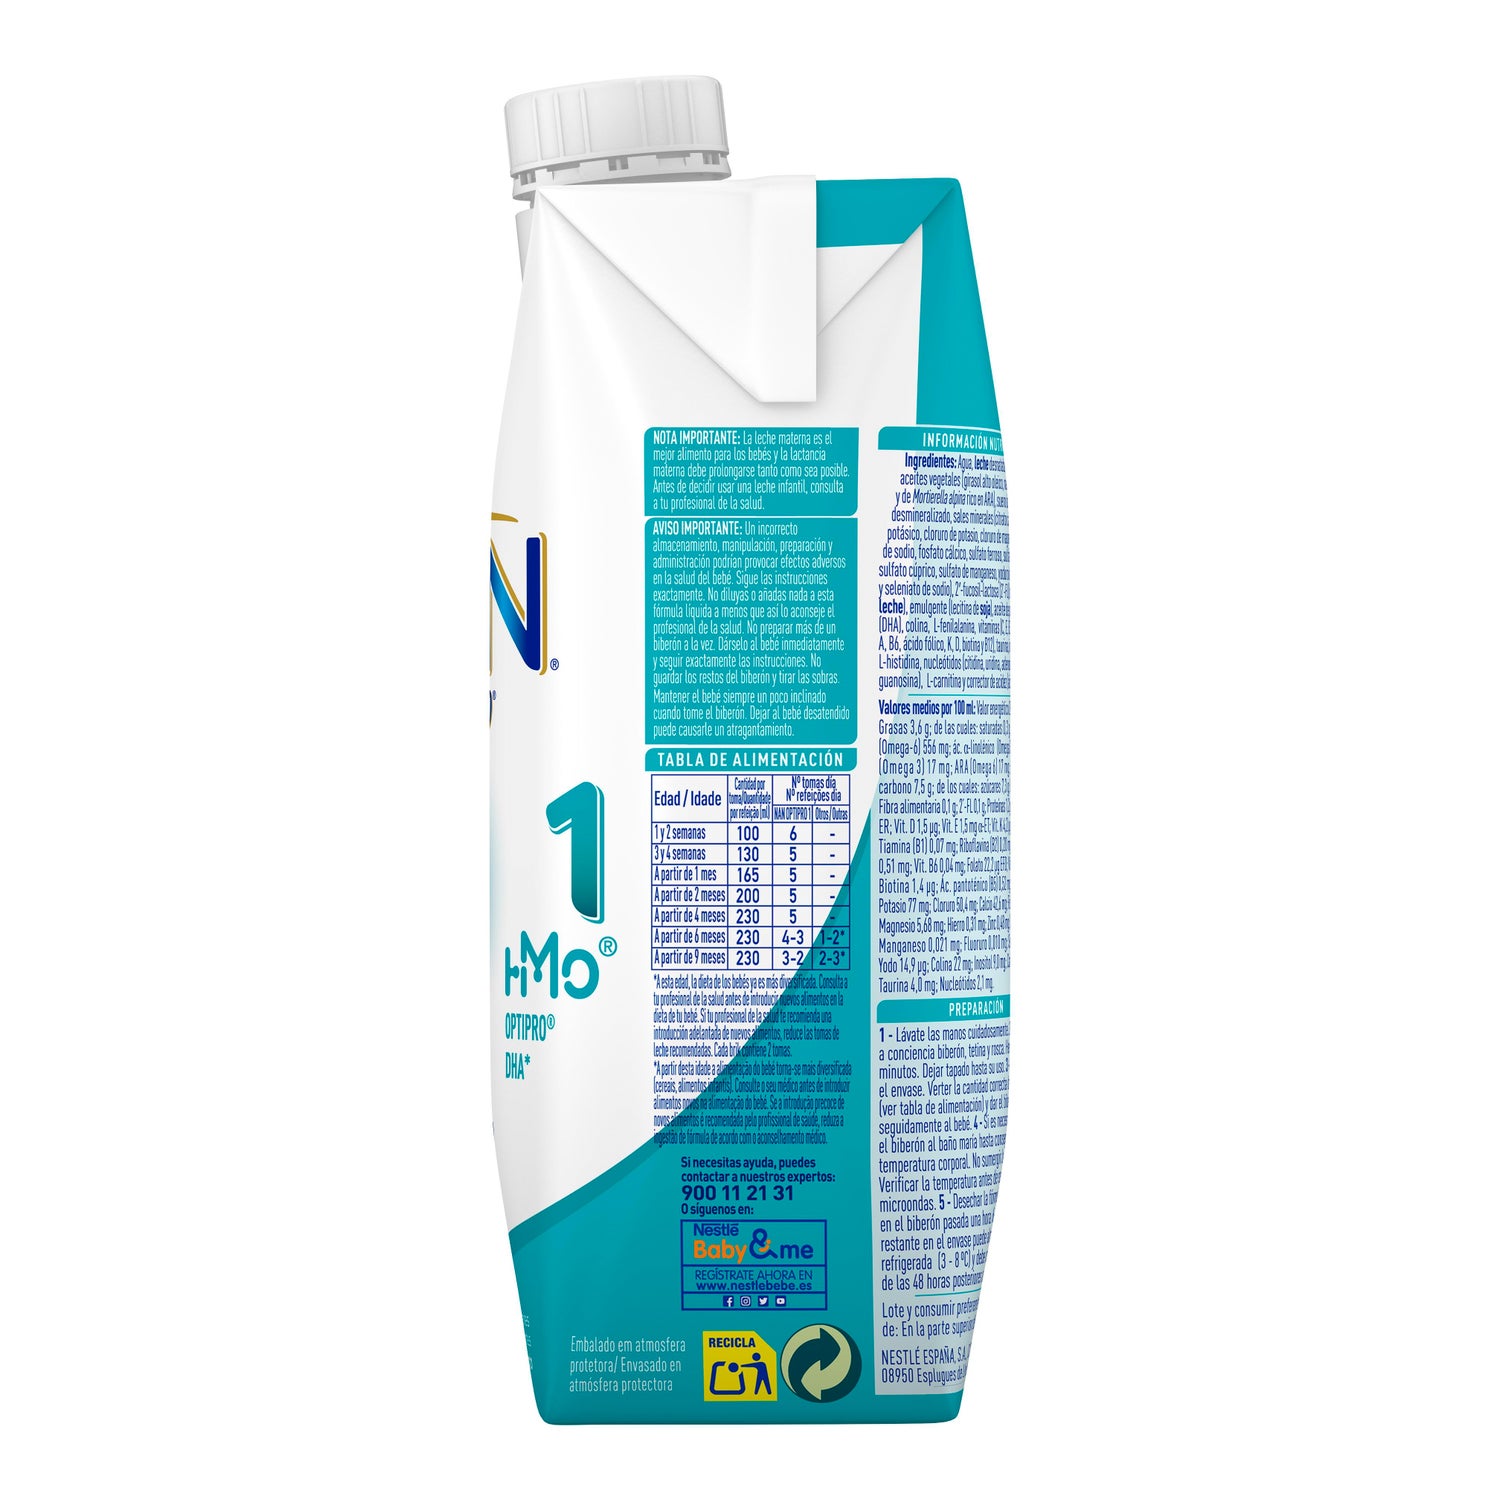 Nestle Nativa 1 Premium Liquid Milk 500ml